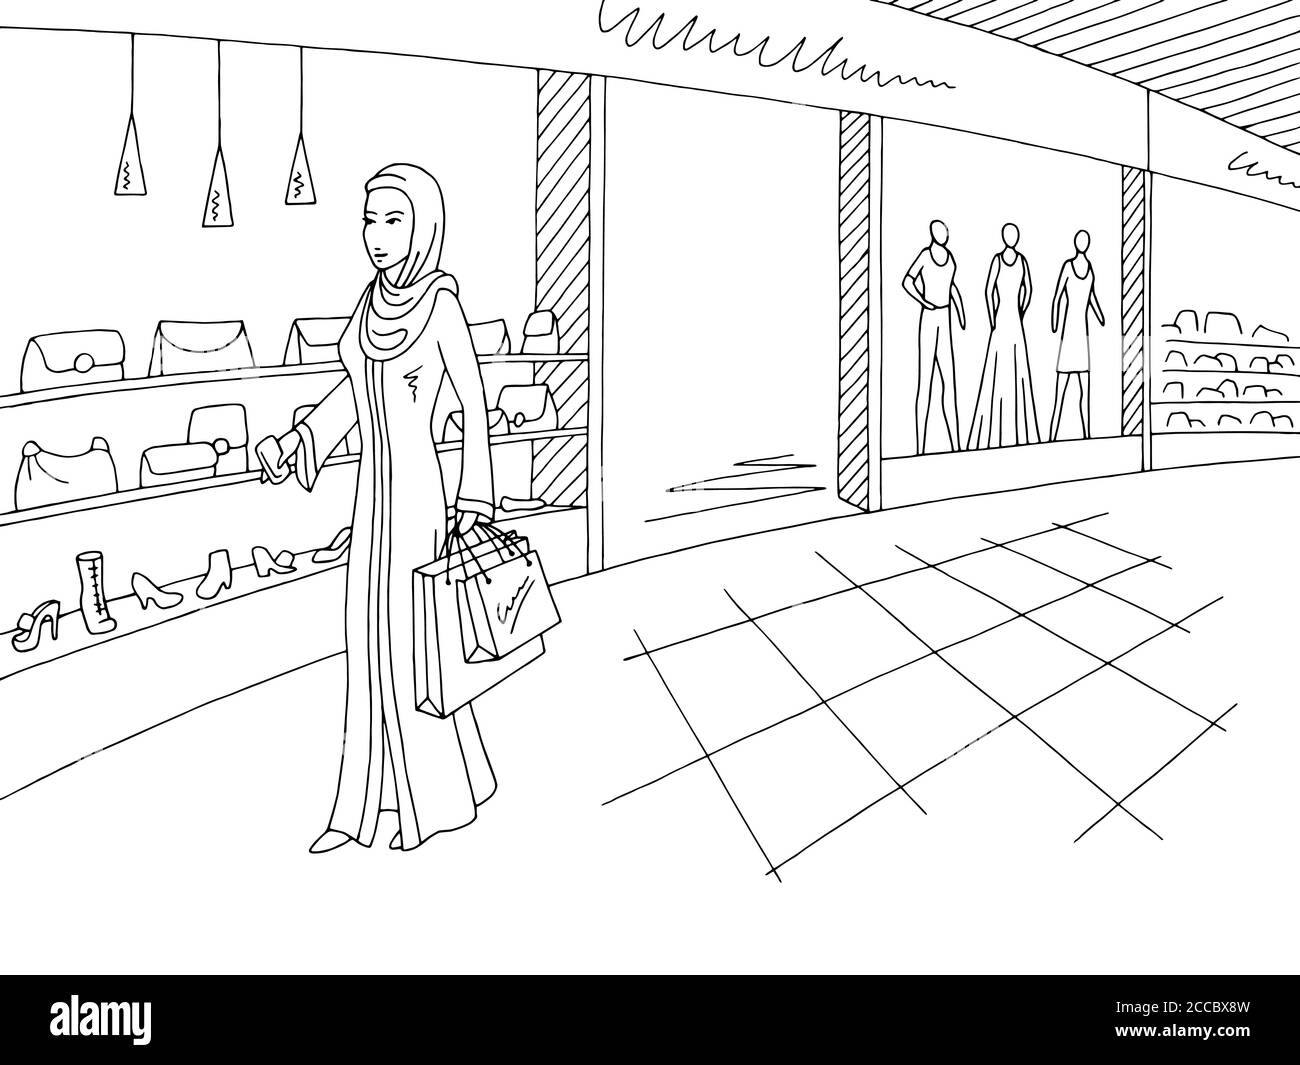 Frau in arabischer Kleidung zu Fuß in Einkaufszentrum Grafik schwarz Weißer Vektor für Skizzendarstellung im Innenraum Stock Vektor